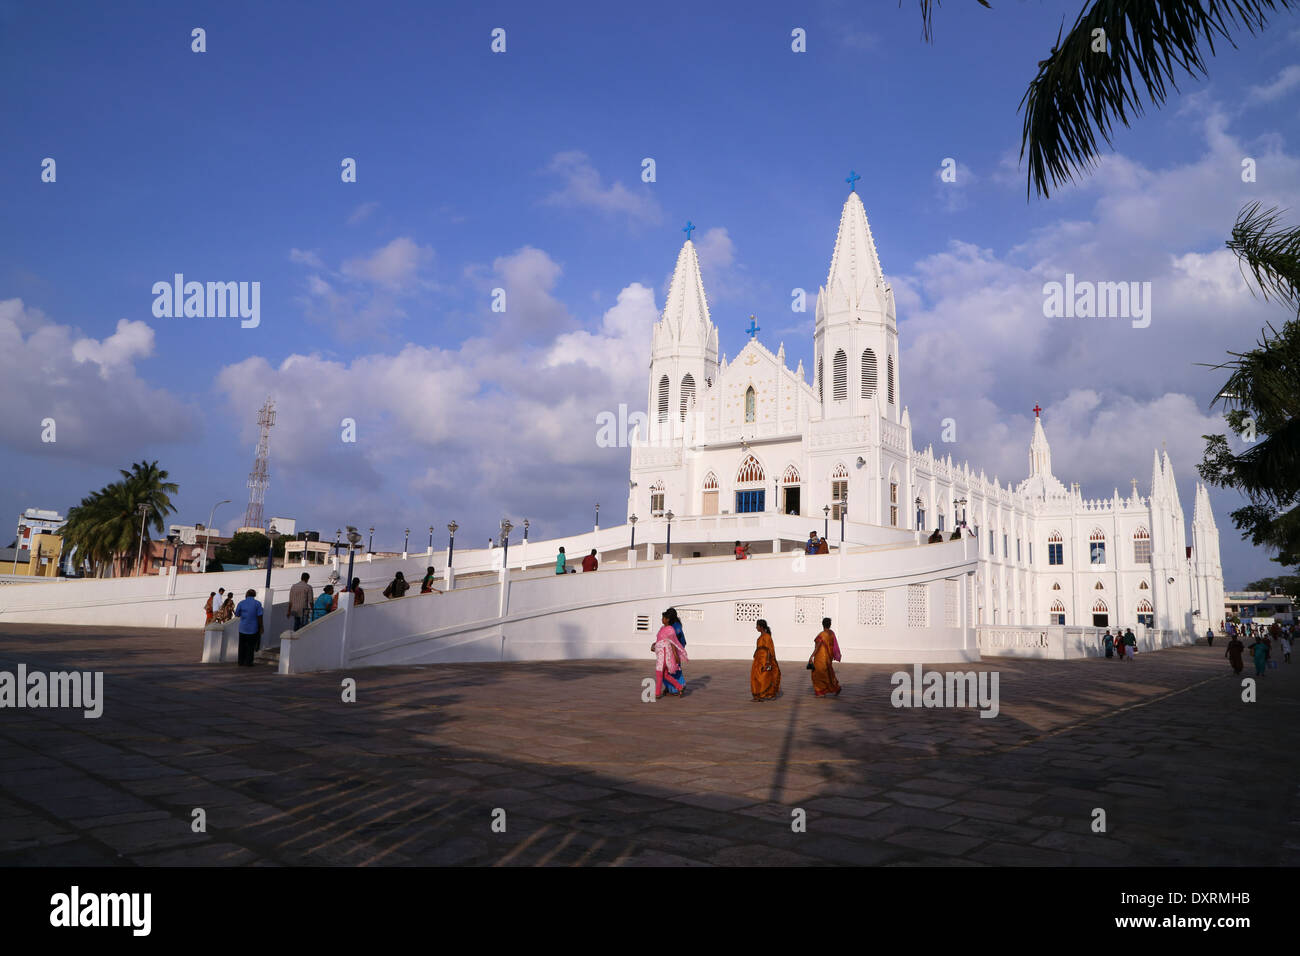 Santuario Basílica de Nuestra Señora de la salud de Vailankanni, distrito de Nagapattinam, Tamil Nadu, India Foto de stock